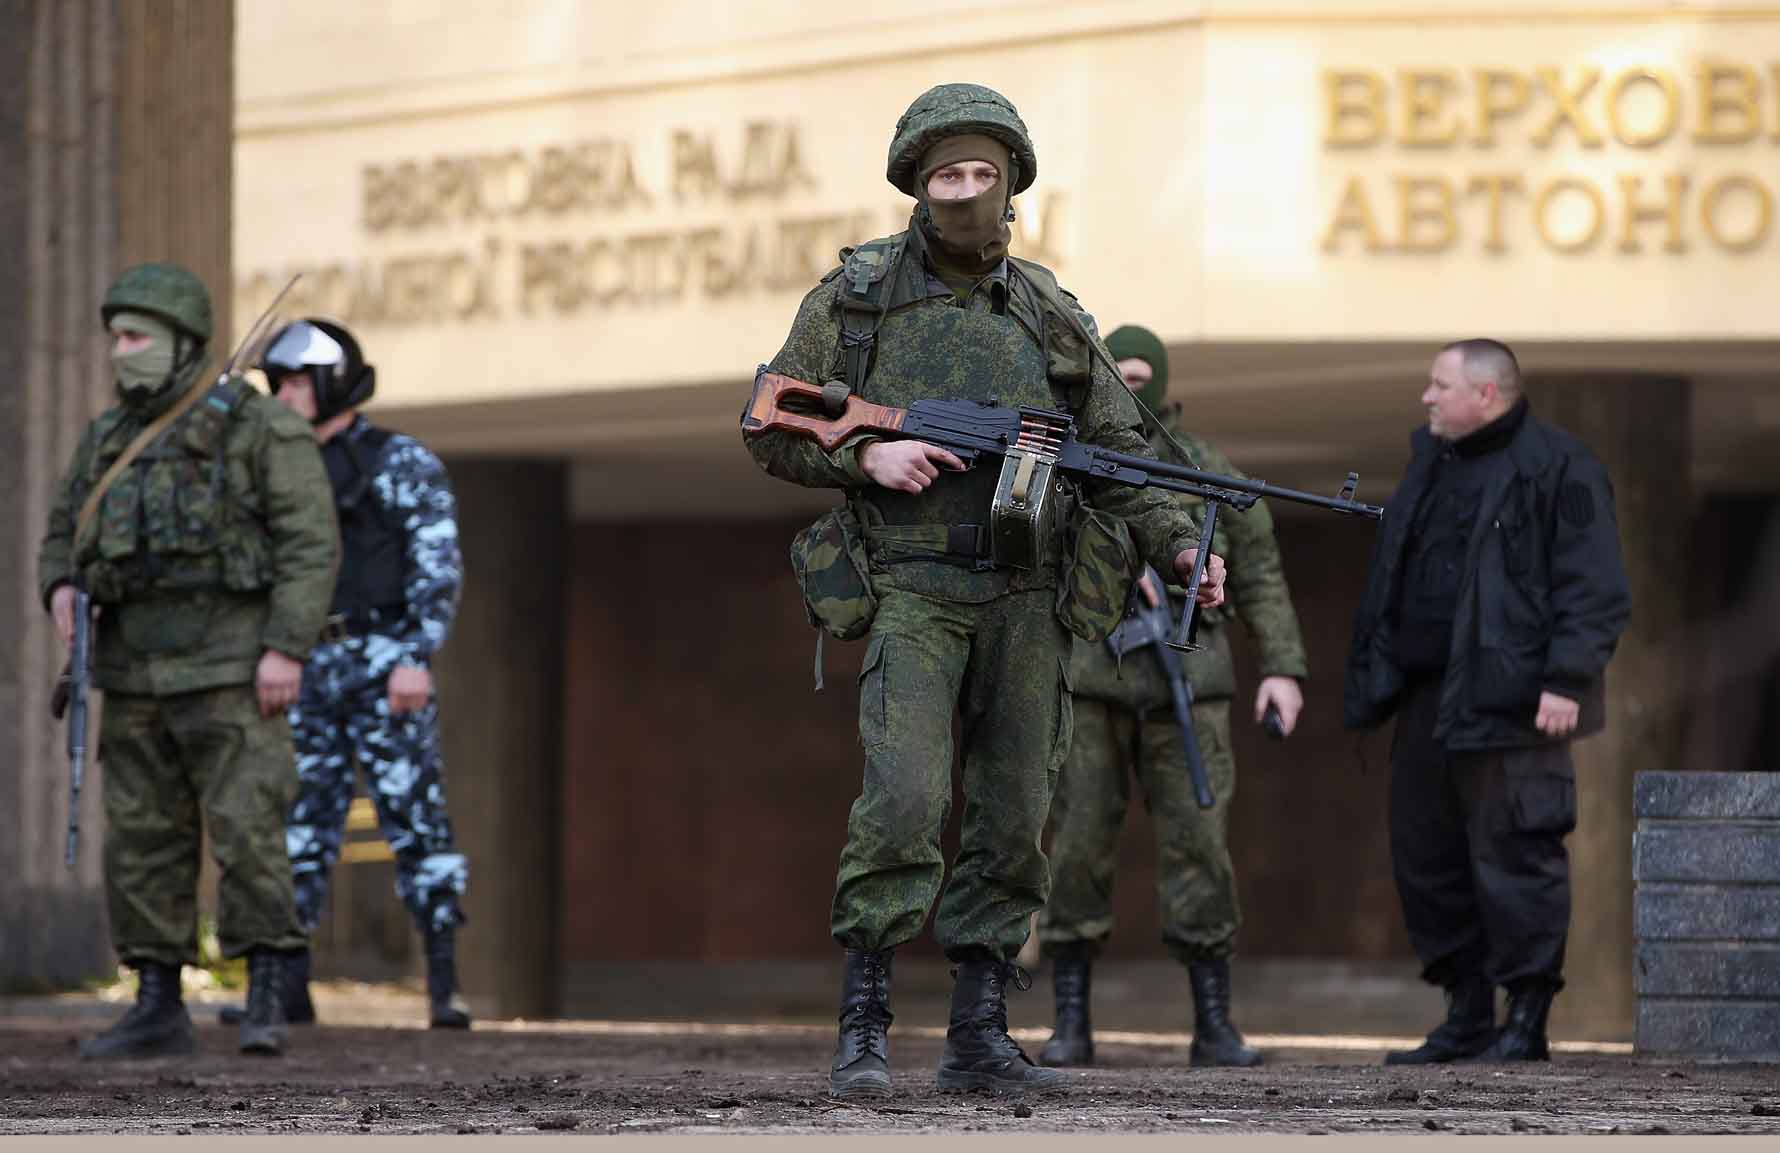 Qrim parlamenti binosini qo‘riqlayotgan rus askari. 2014-yil 1-mart